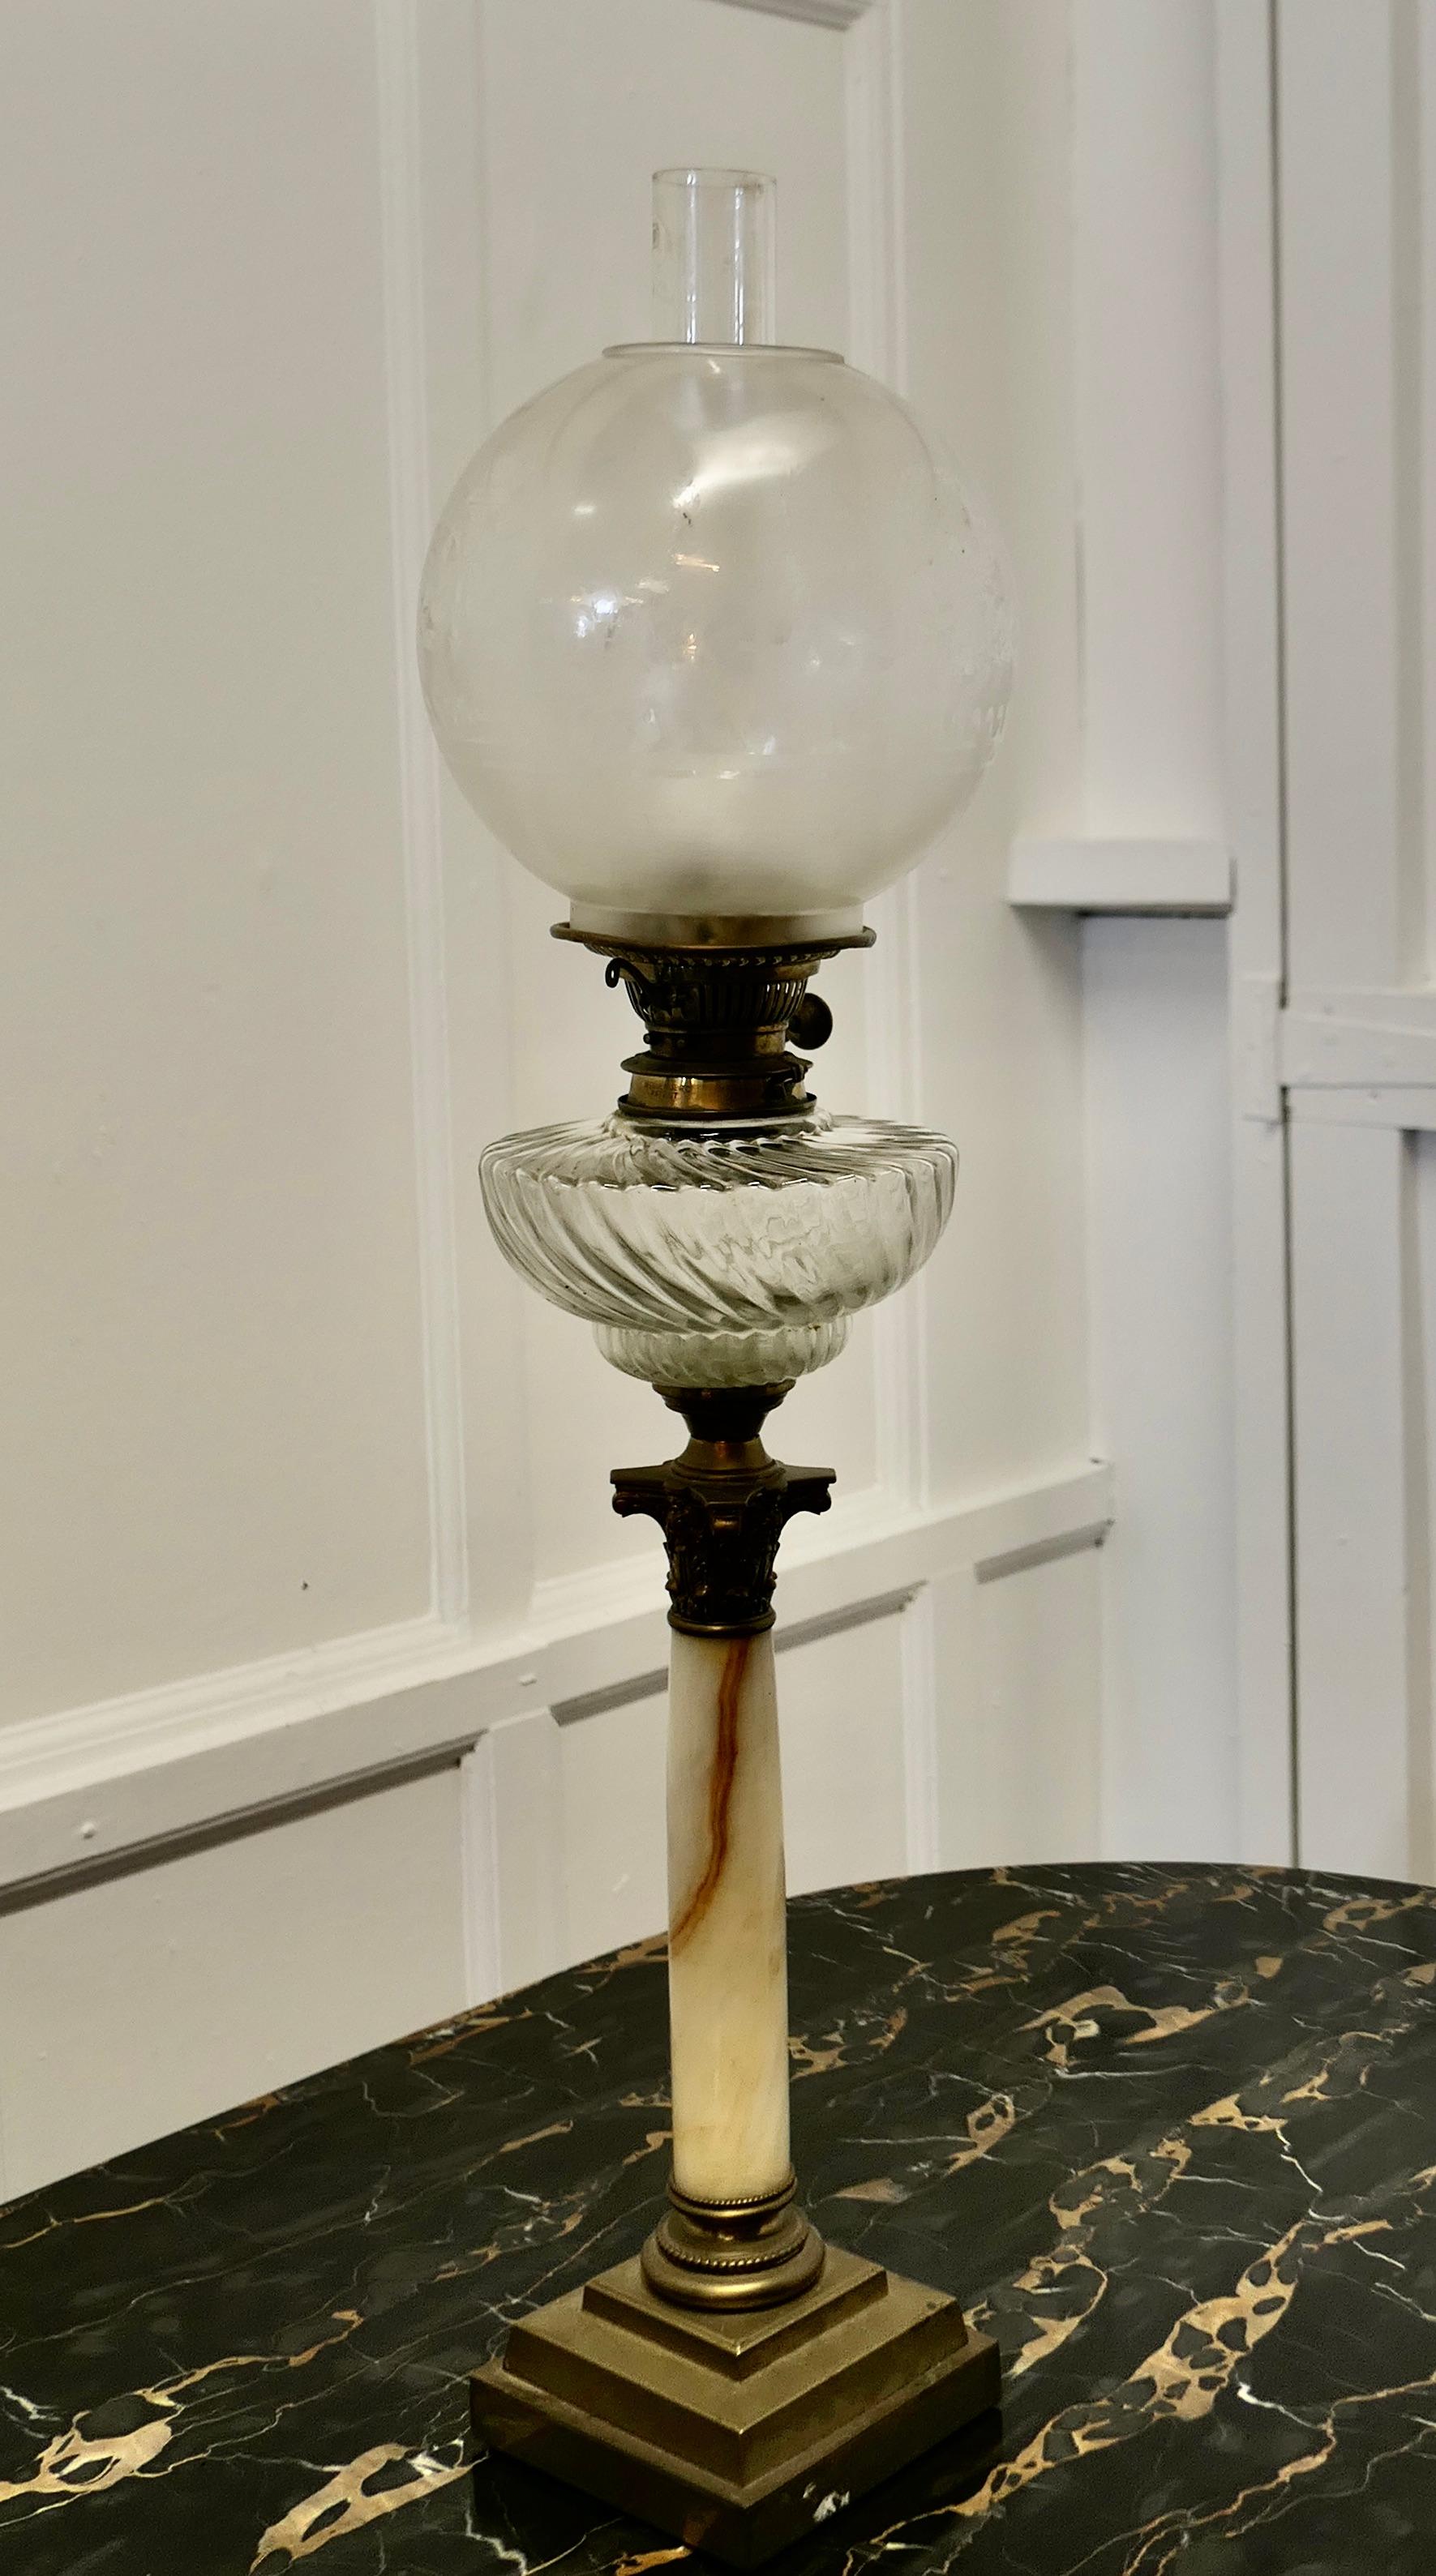 Lampe à huile sur colonne de marbre avec base en laiton à gradins

Une jolie lampe en verre posée sur un marbre  et  base en laiton, la lampe est une belle pièce, elle a une cheminée en verre et un brûleur mais je ne peux pas garantir qu'elle est en